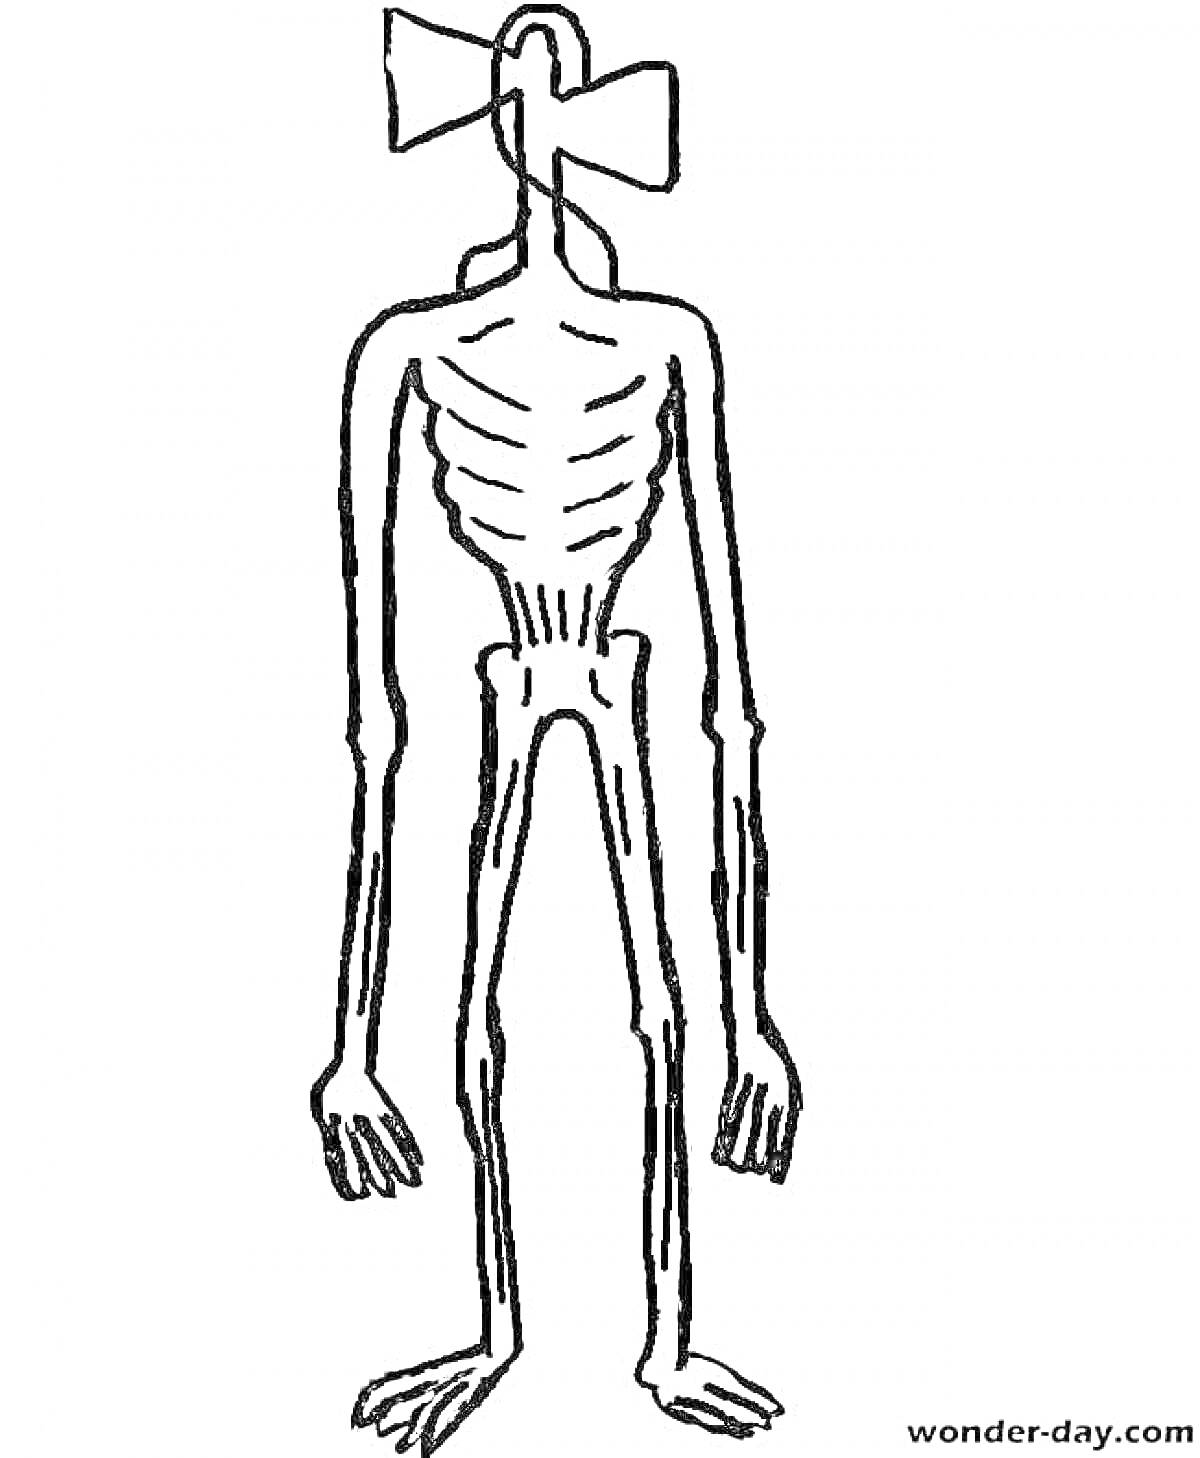 Сиреноголовый с вытянутыми руками и ногами, анатомические особенности с ребрами